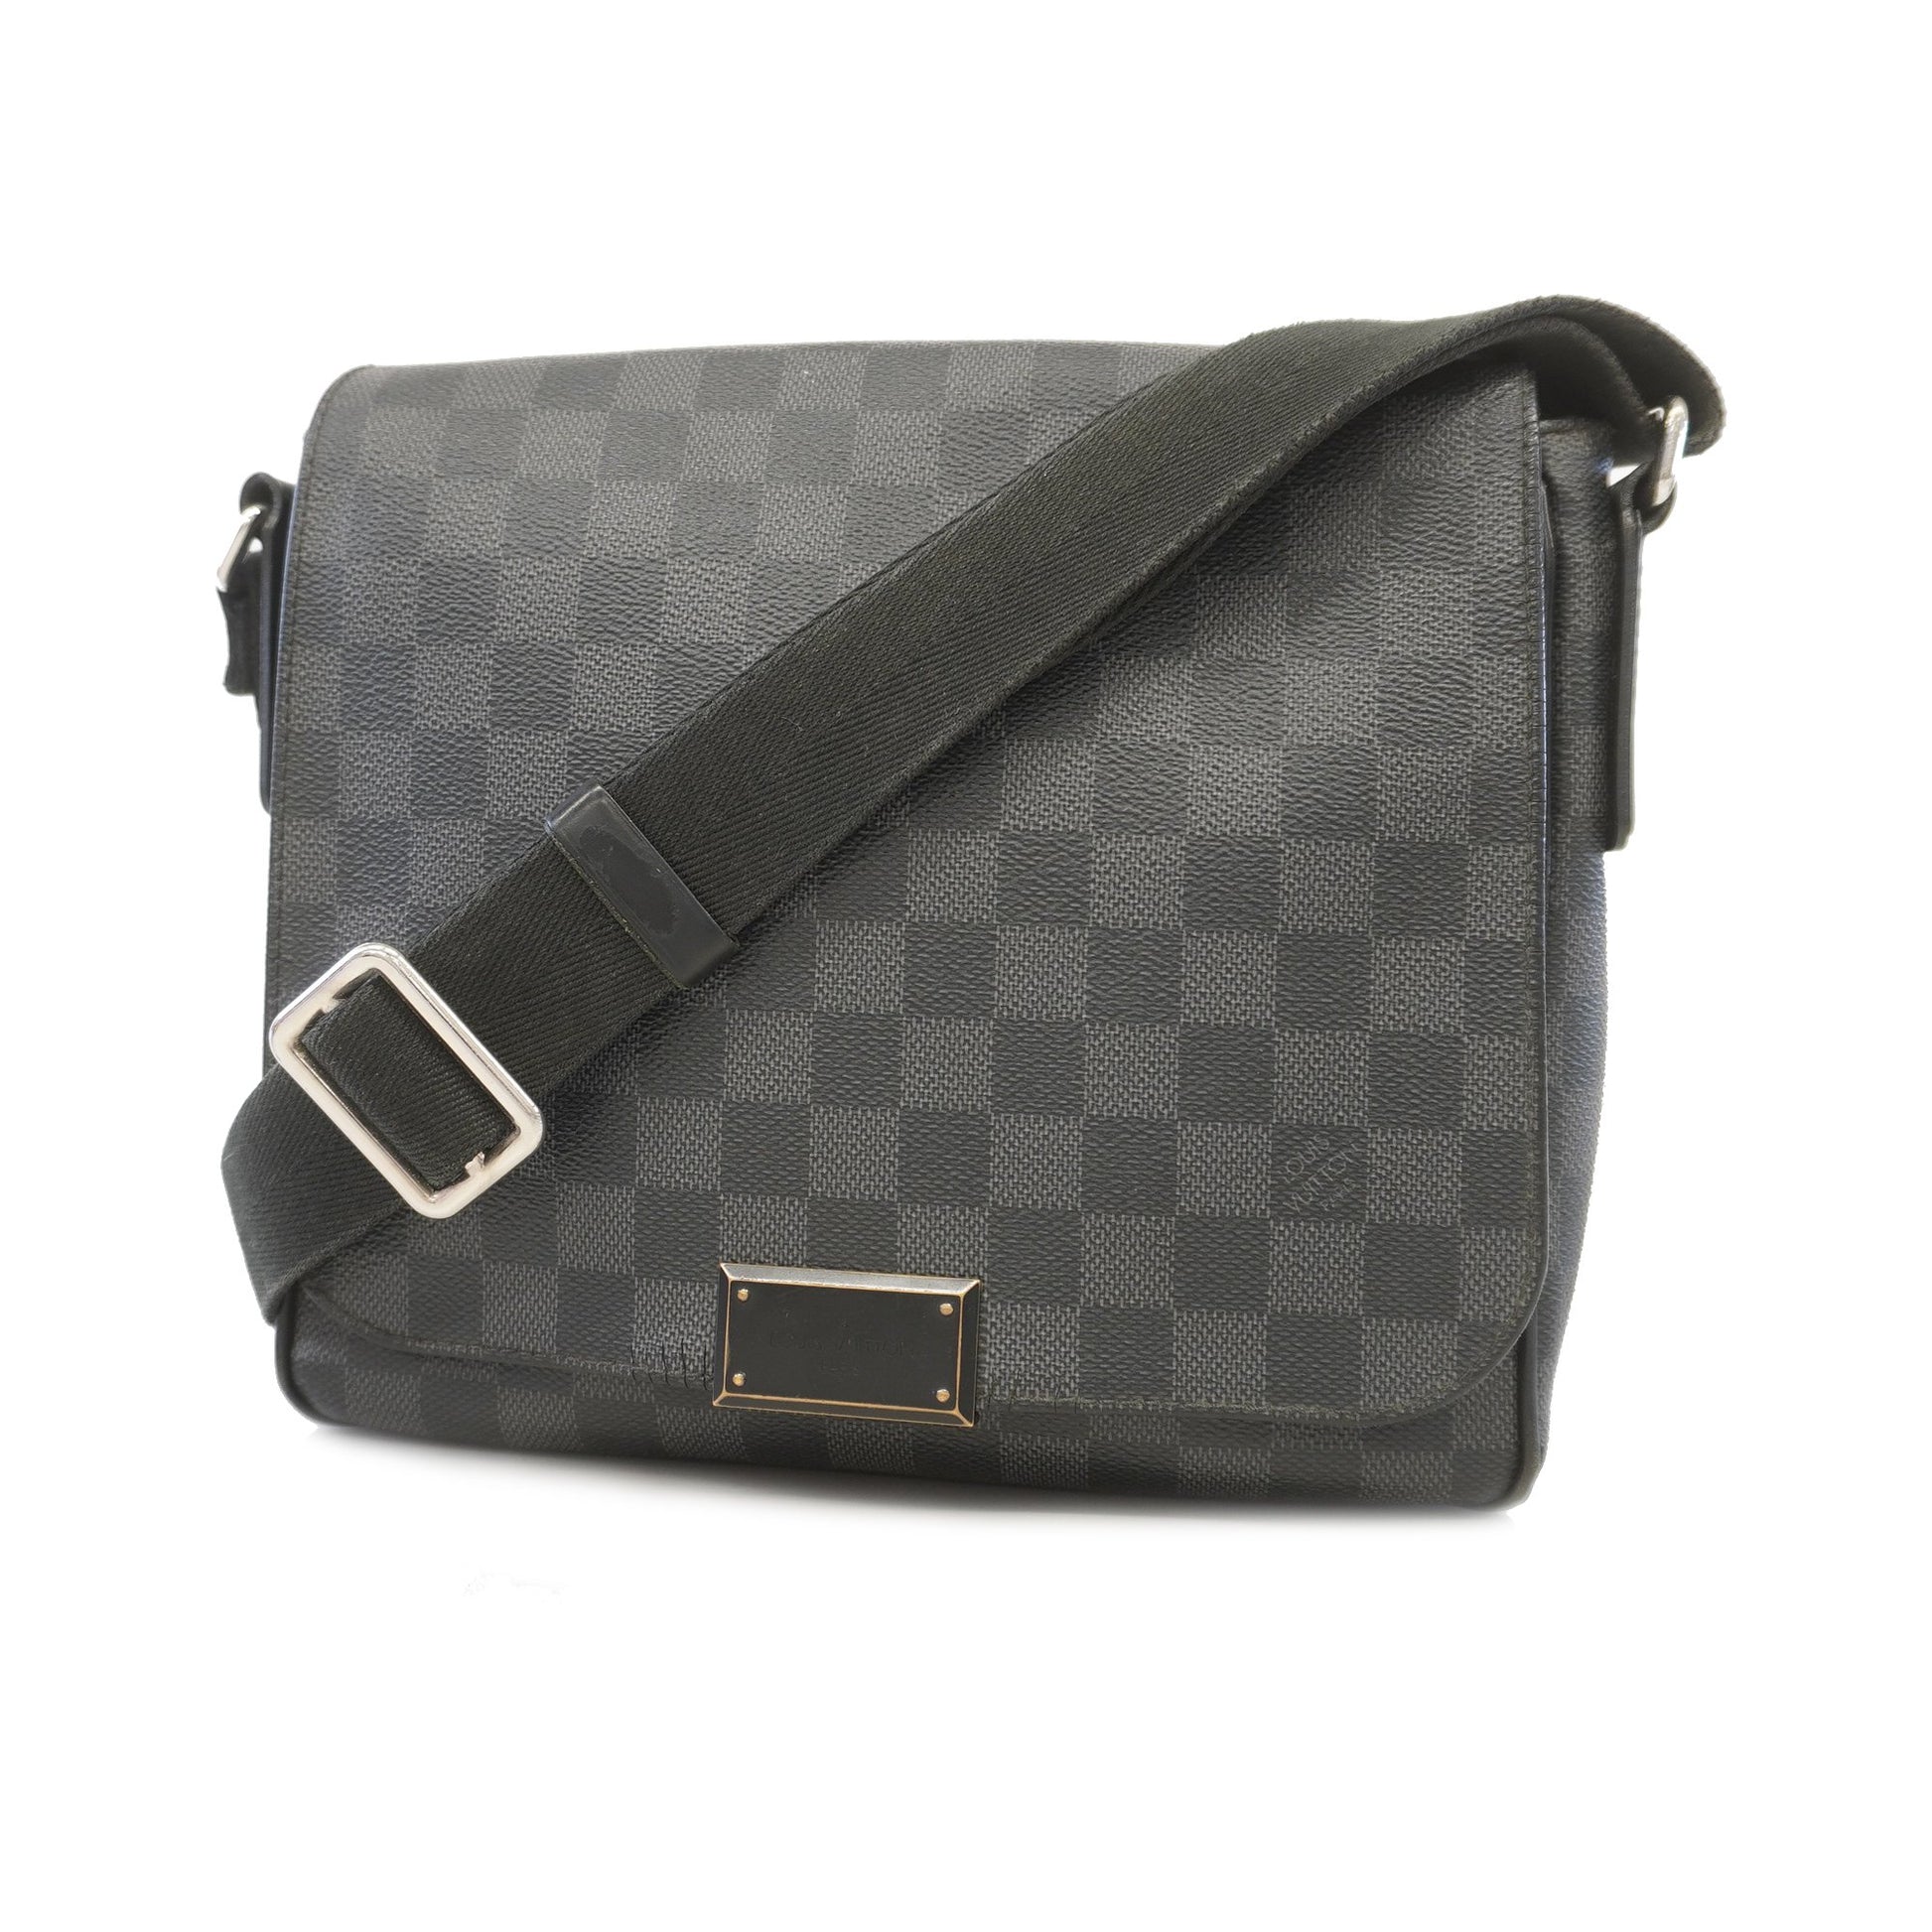 Louis Vuitton - District PM Damier Messenger Bag - Shoulder bag